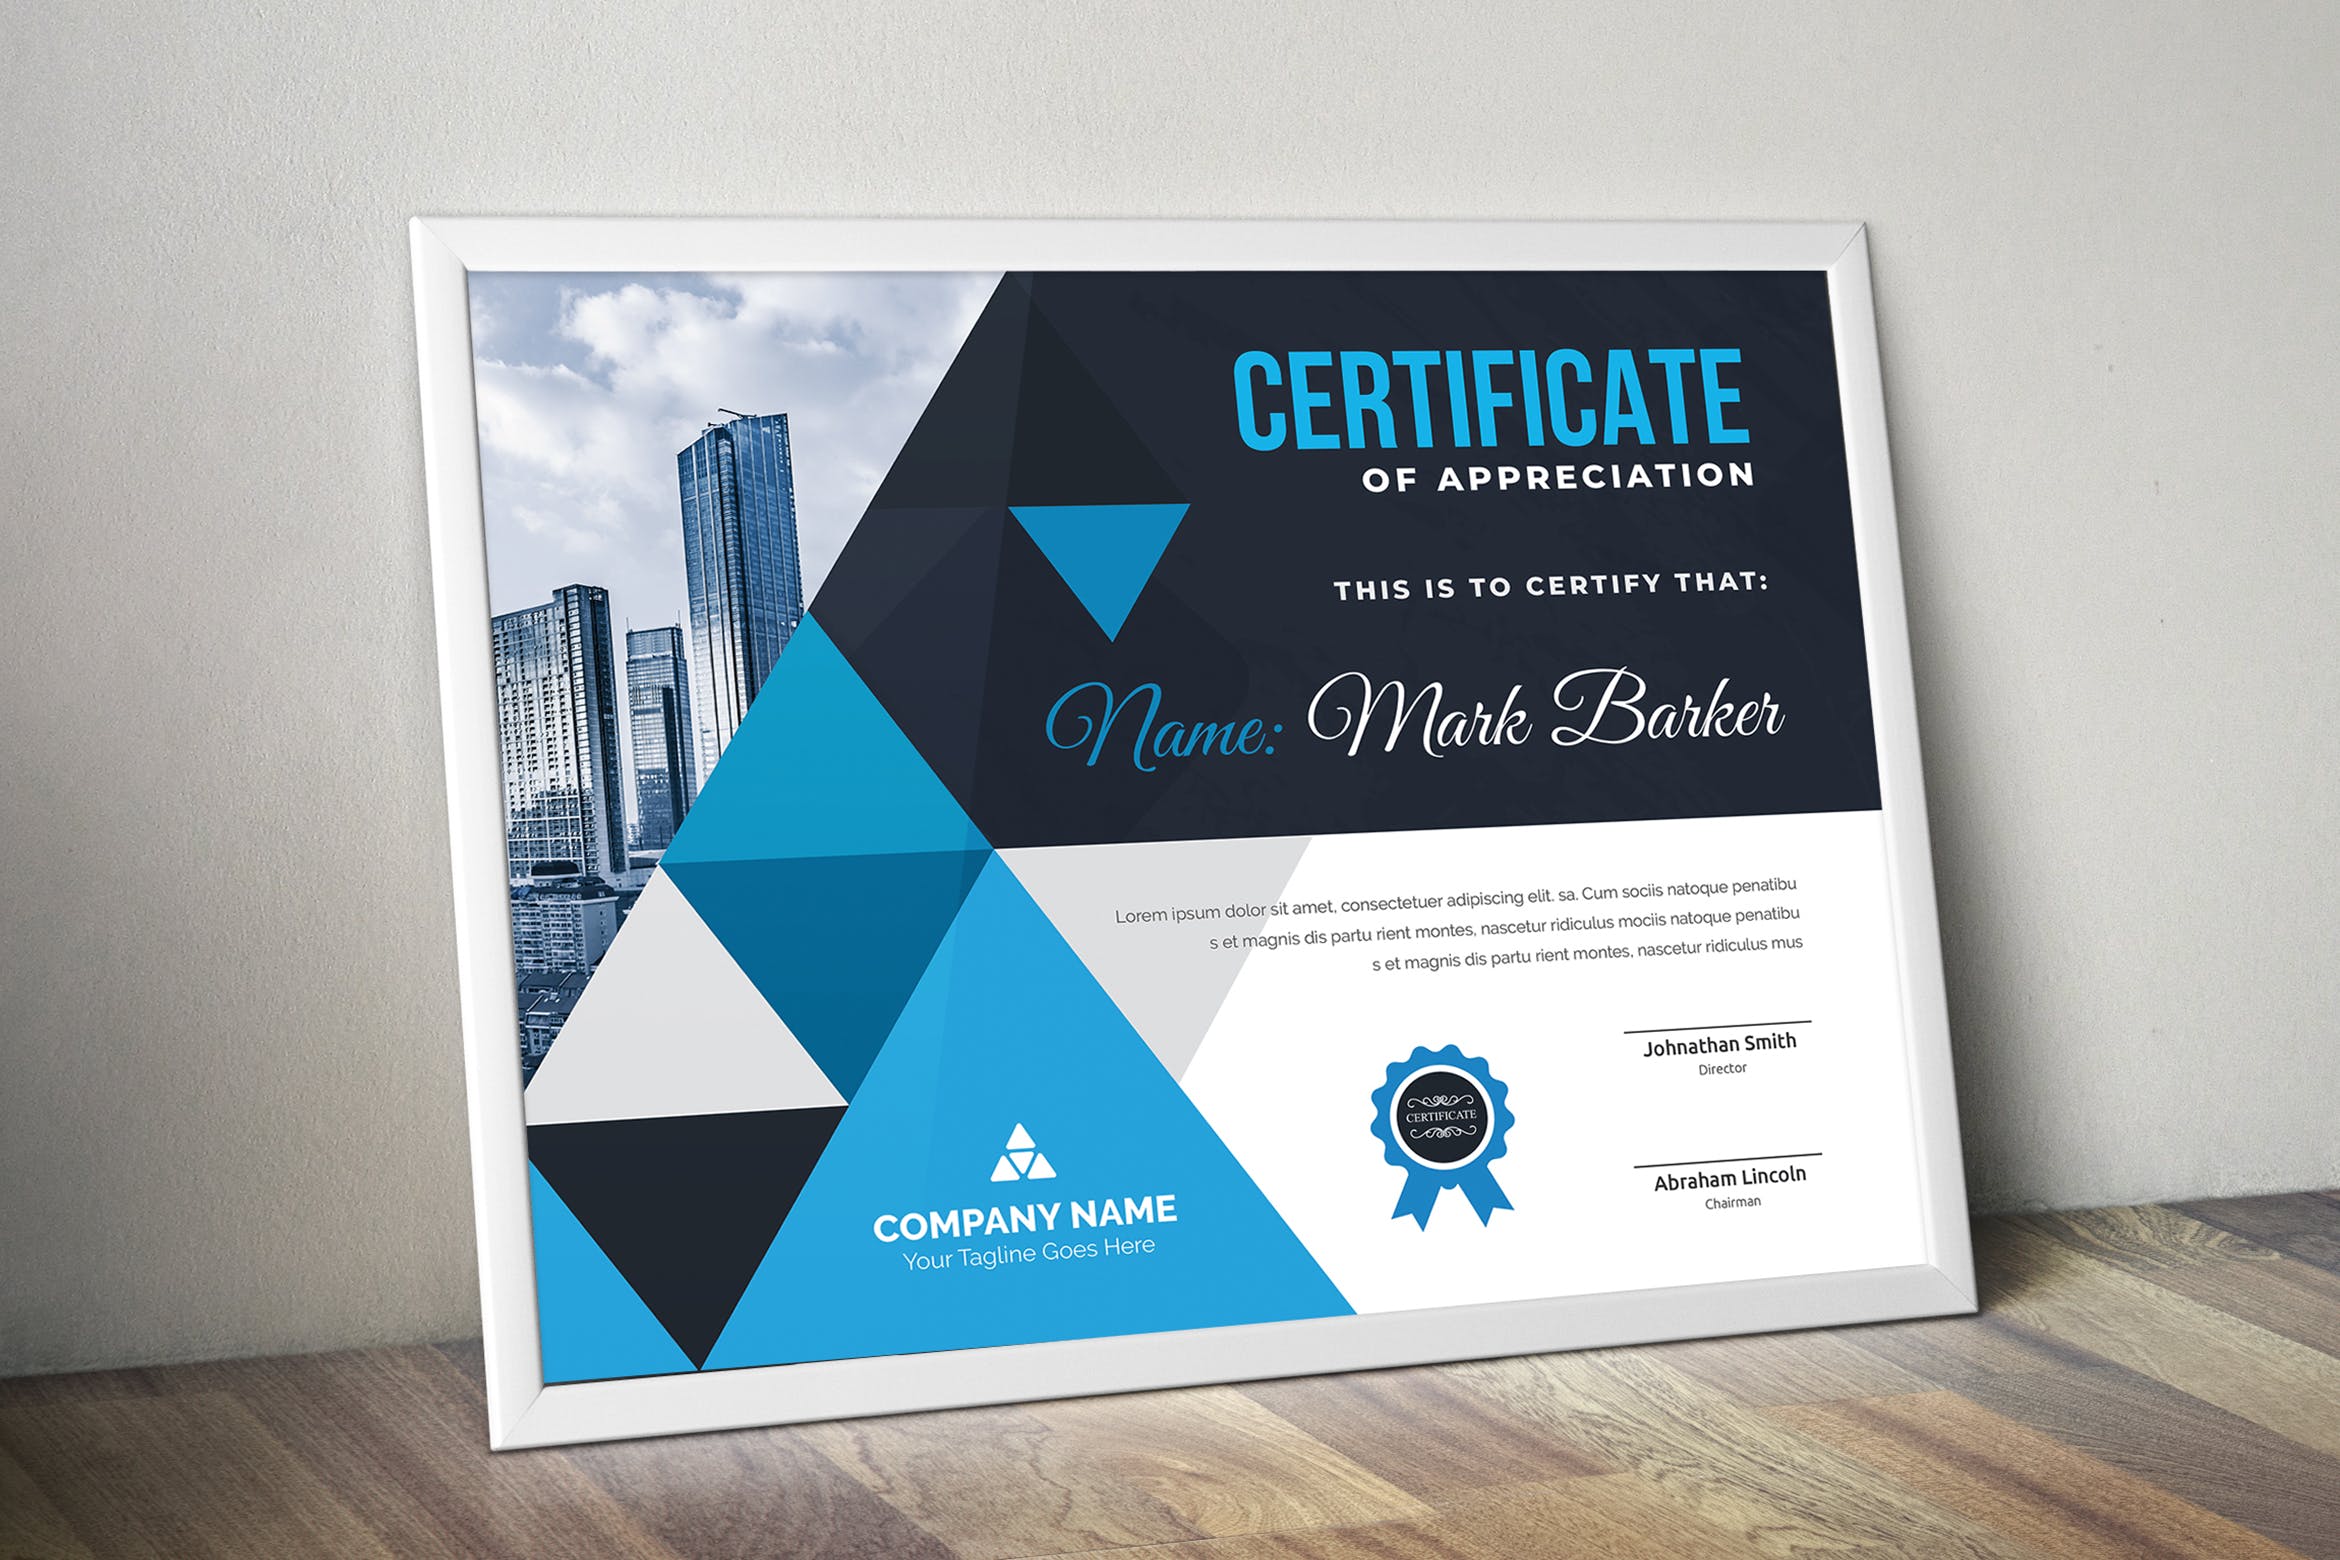 品牌销售代理/资格认证证书设计模板 Certificate插图